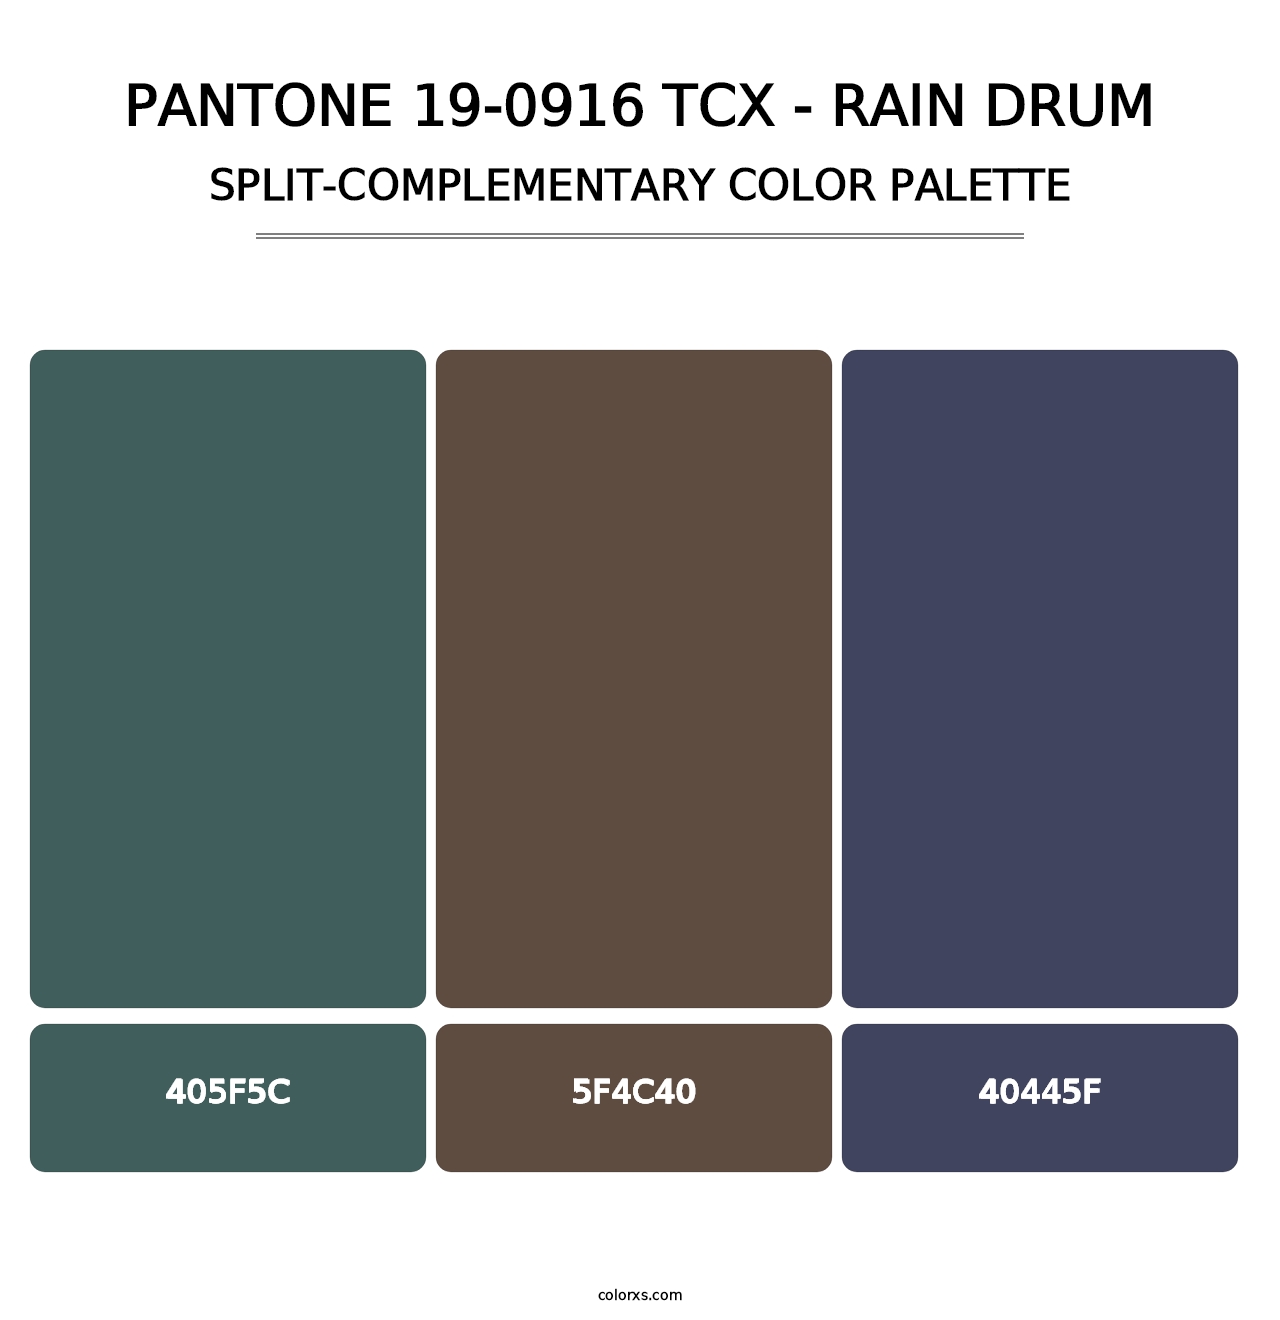 PANTONE 19-0916 TCX - Rain Drum - Split-Complementary Color Palette